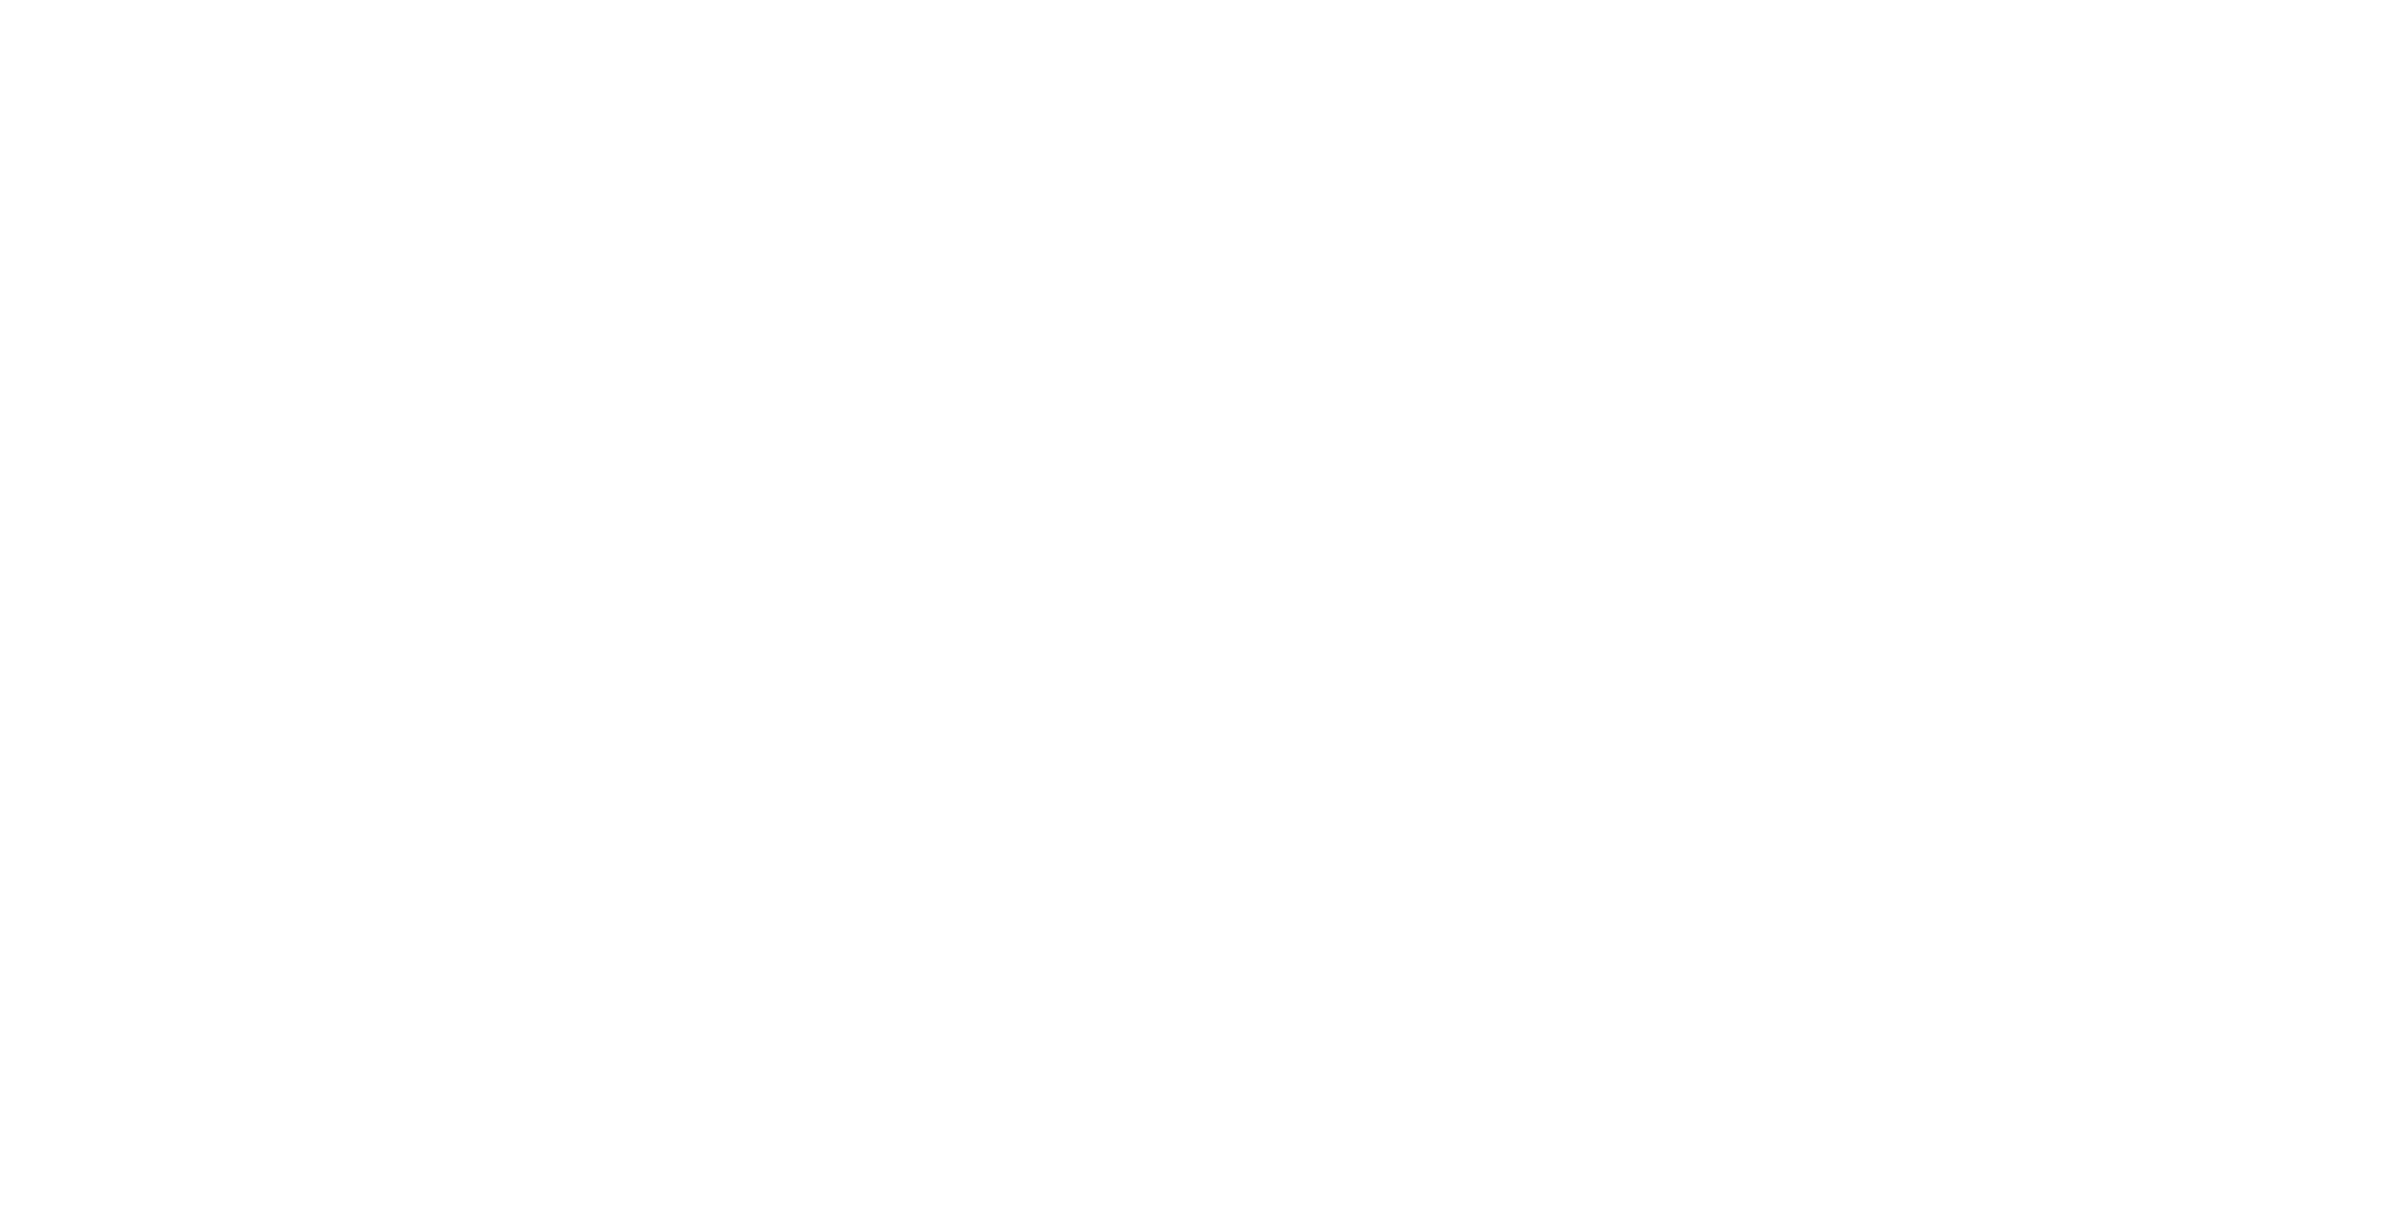 the easton